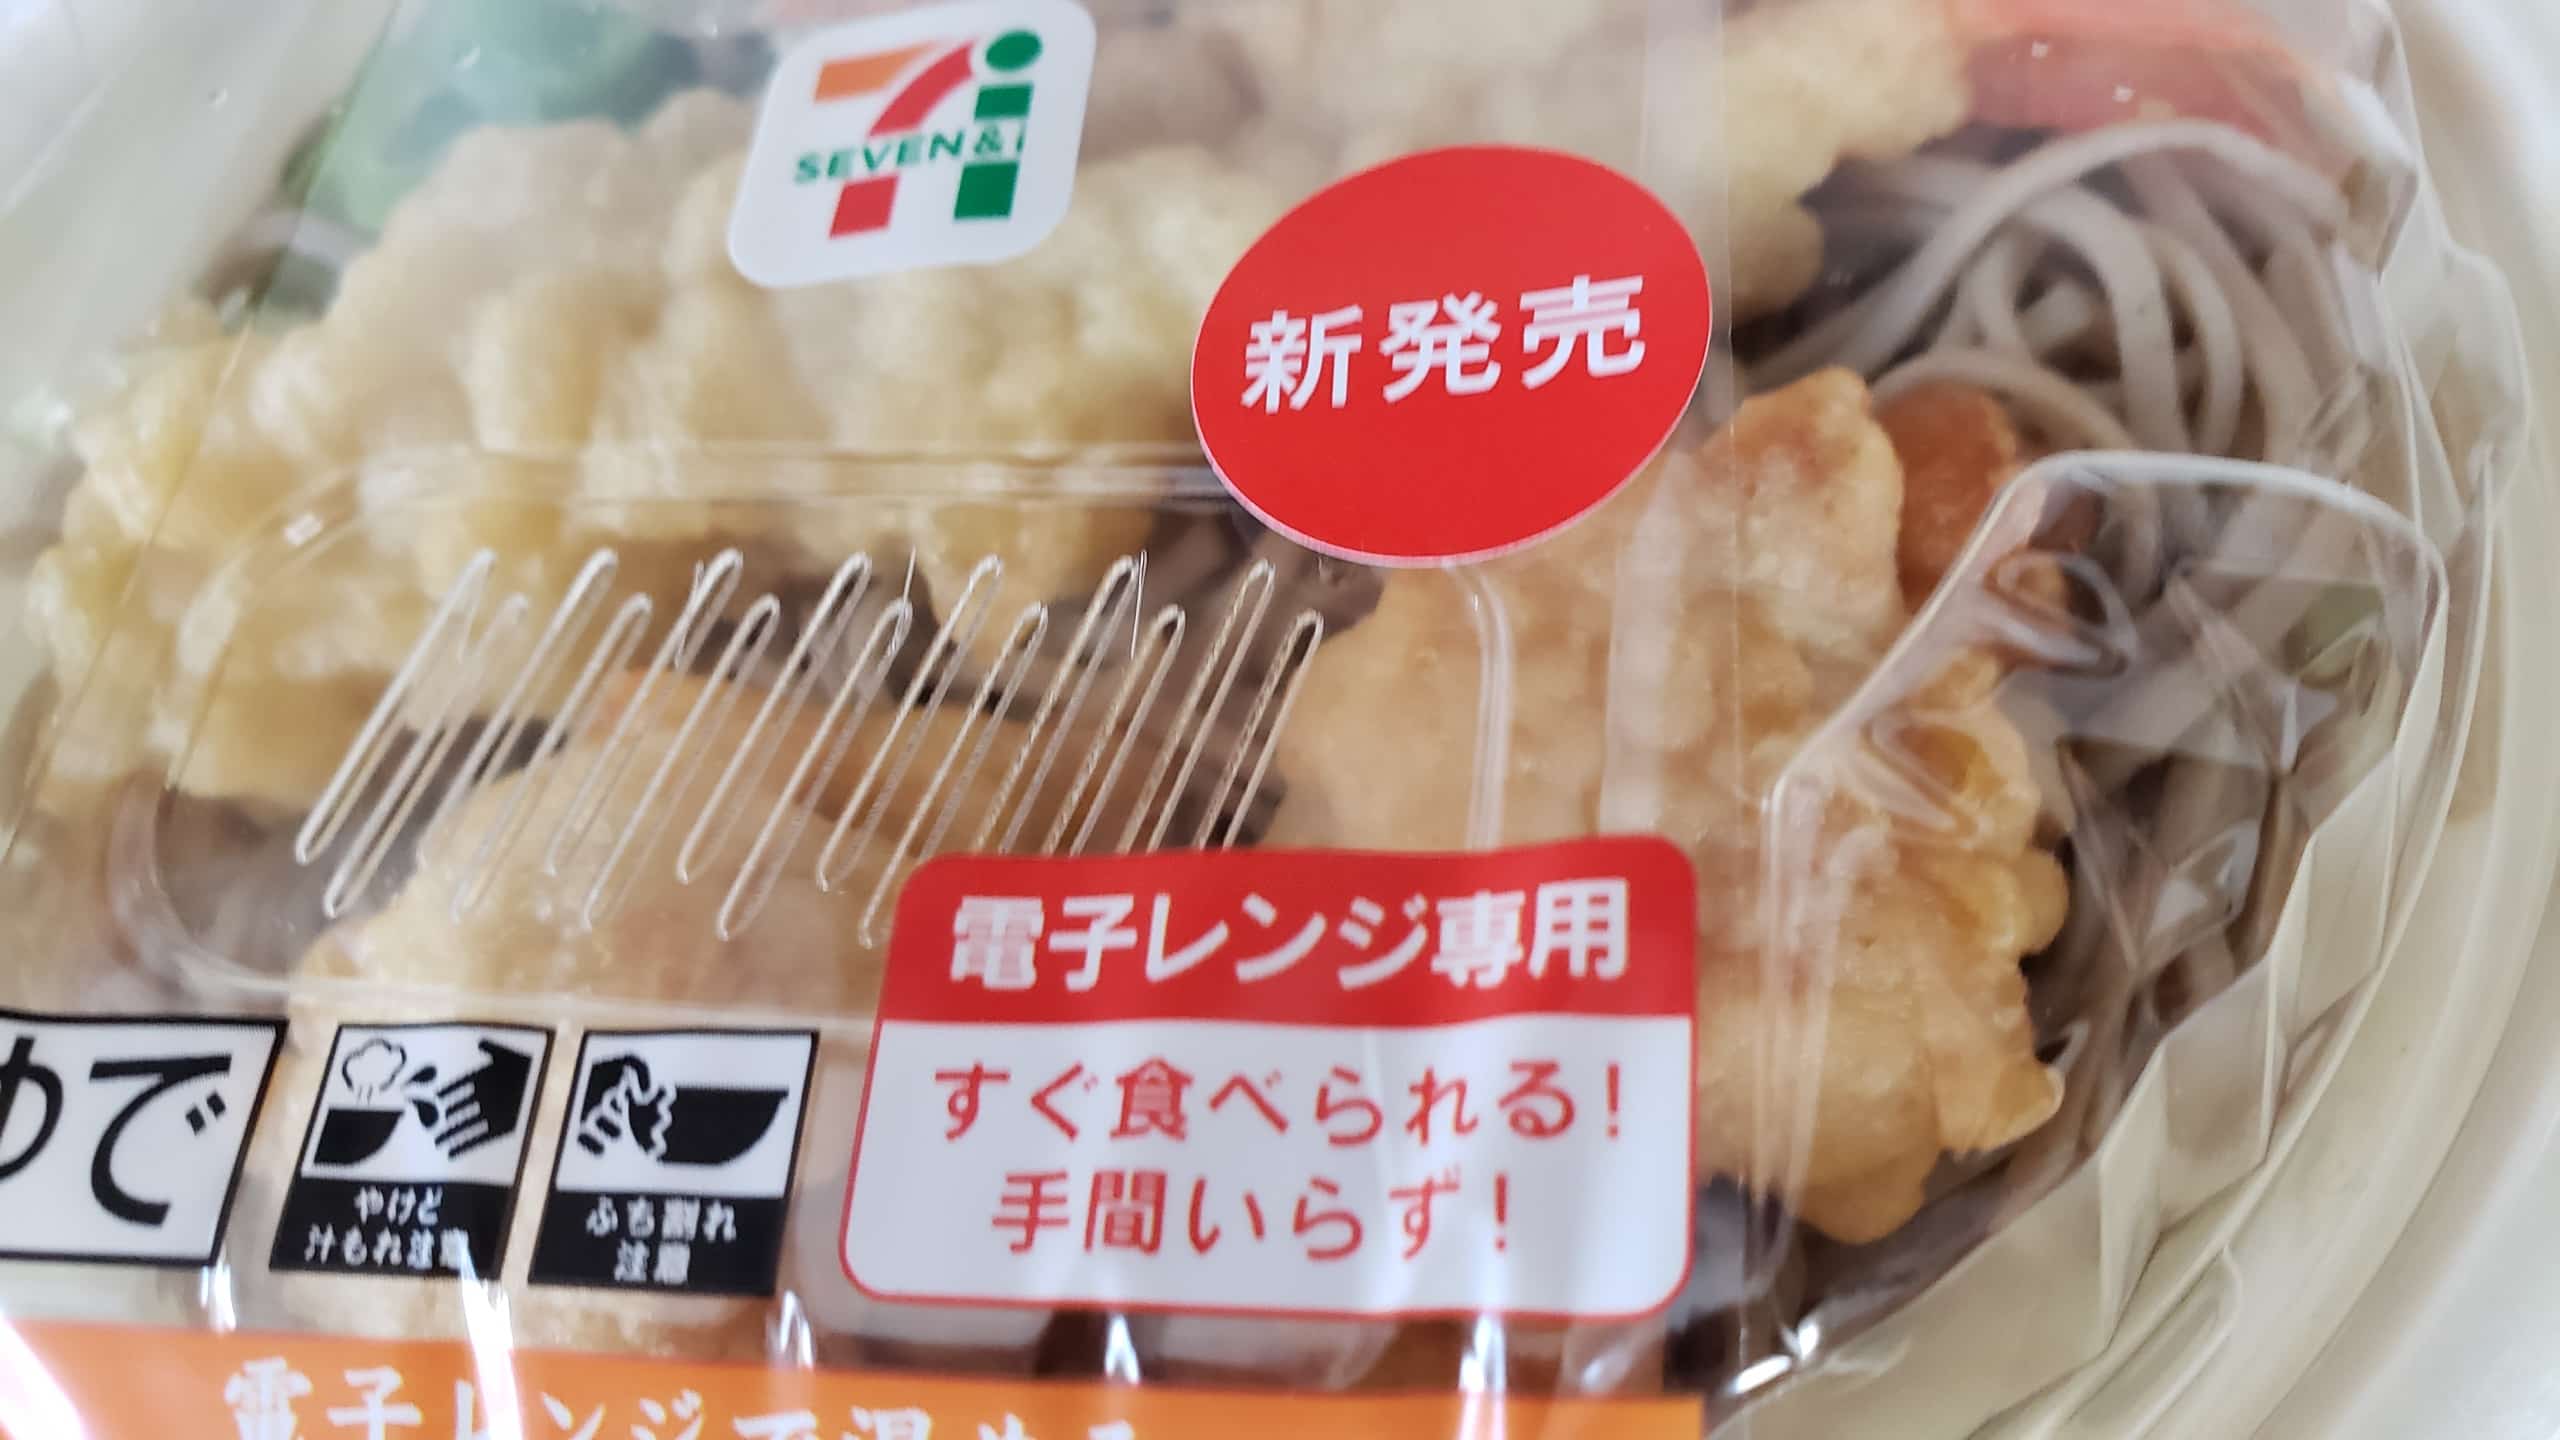 19 04 セブンのそば復活 新製品 2種盛天ぷら蕎麦 で おいしさを取り戻せ